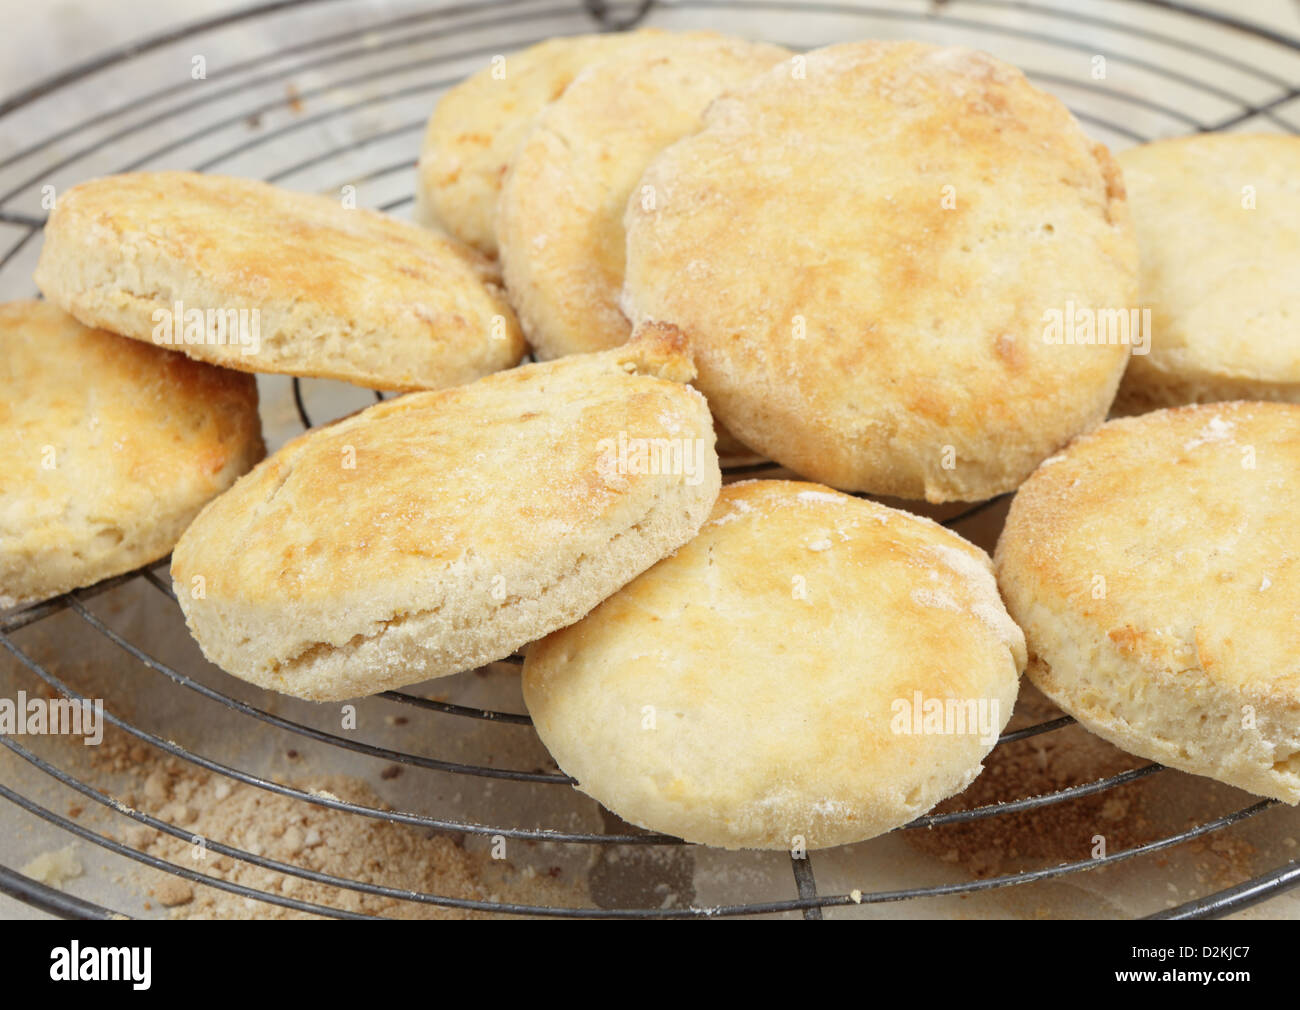 Frisch gebackene Scones oder Kekse, auf einem Kuchengitter abkühlen Stockfoto